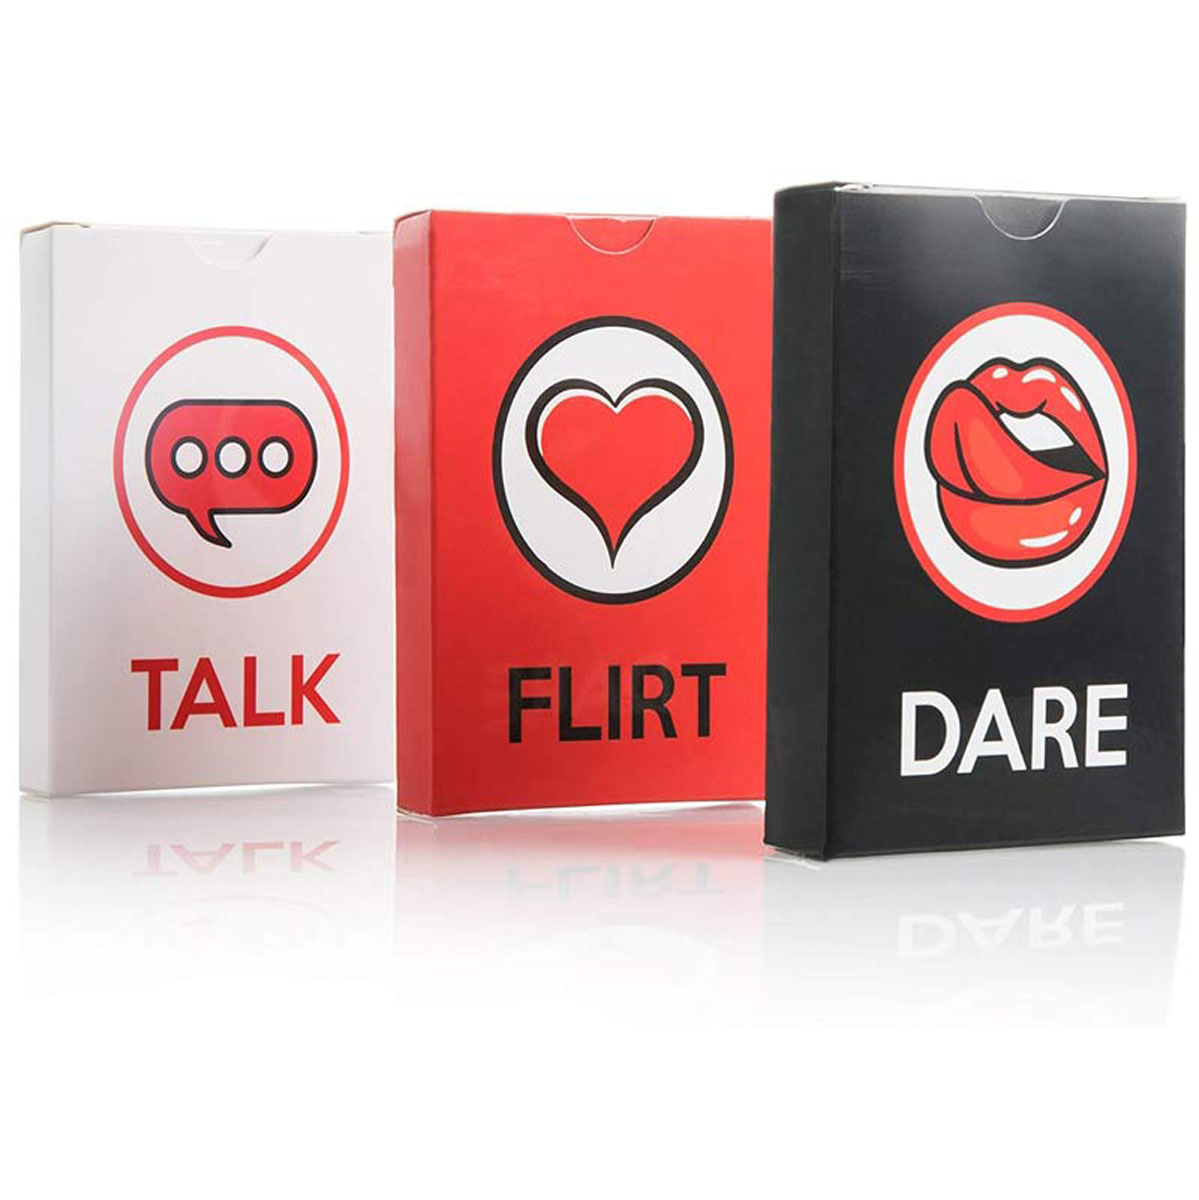 BOARDGAME THẺ BÀI TIẾNG ANH DÀNH CHO CẶP ĐÔI TALK, FLIRT OR DARE FUN AND ROMANTIC GAME FOR COUPLES